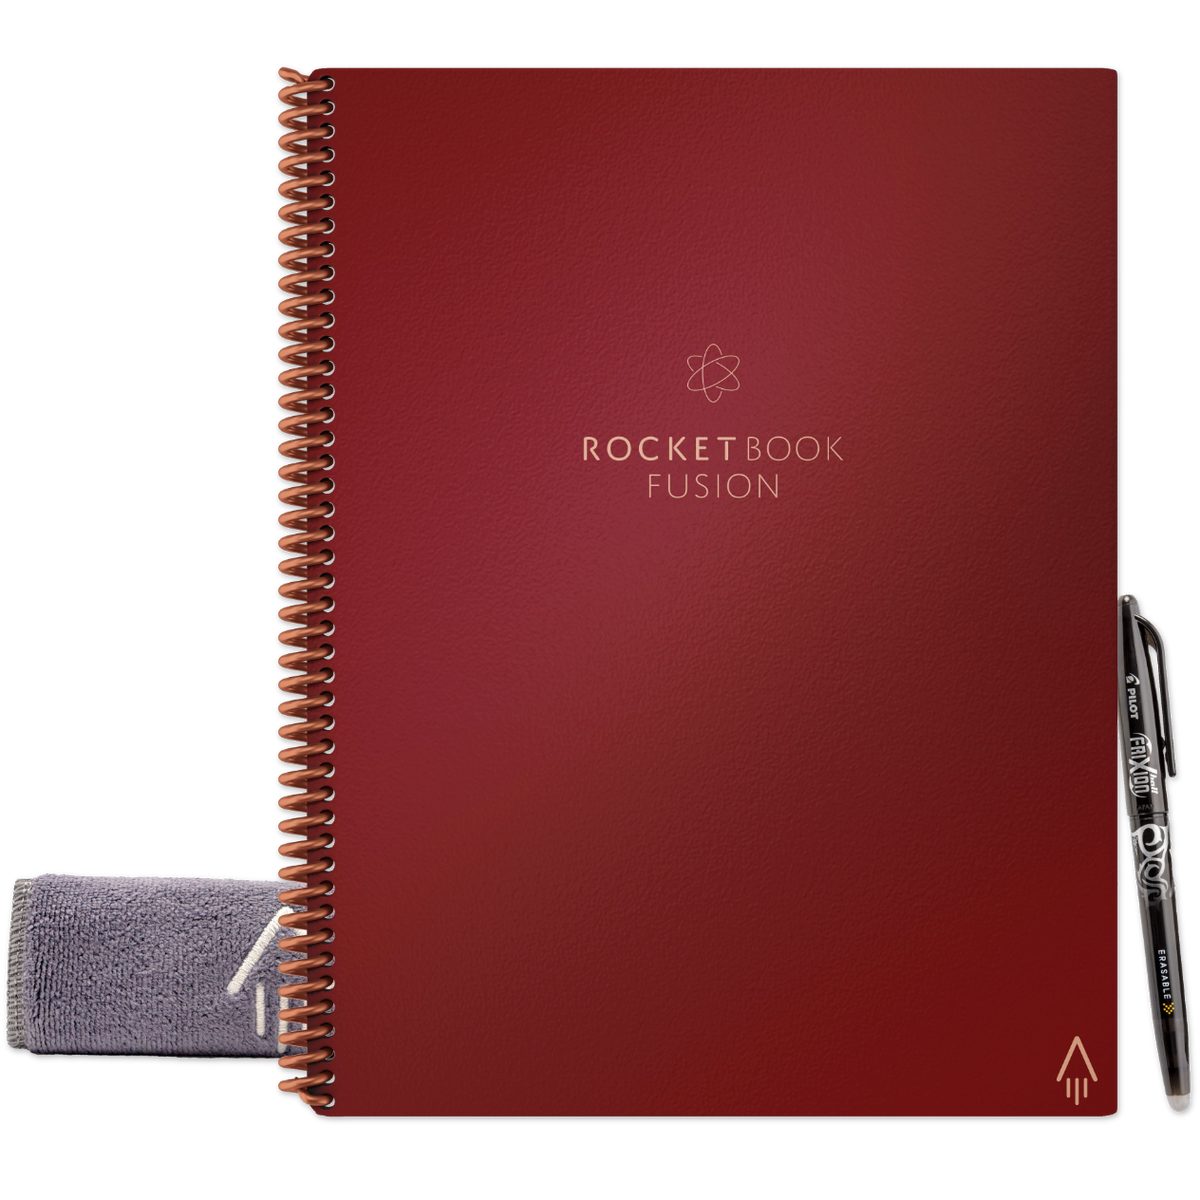 Rocketbook Everlast Notizbuch Book Sky, Symbol Scarlet und FUSION mit Rocket Tagging und - Skizzenbuch Notiz- App-Anbindung